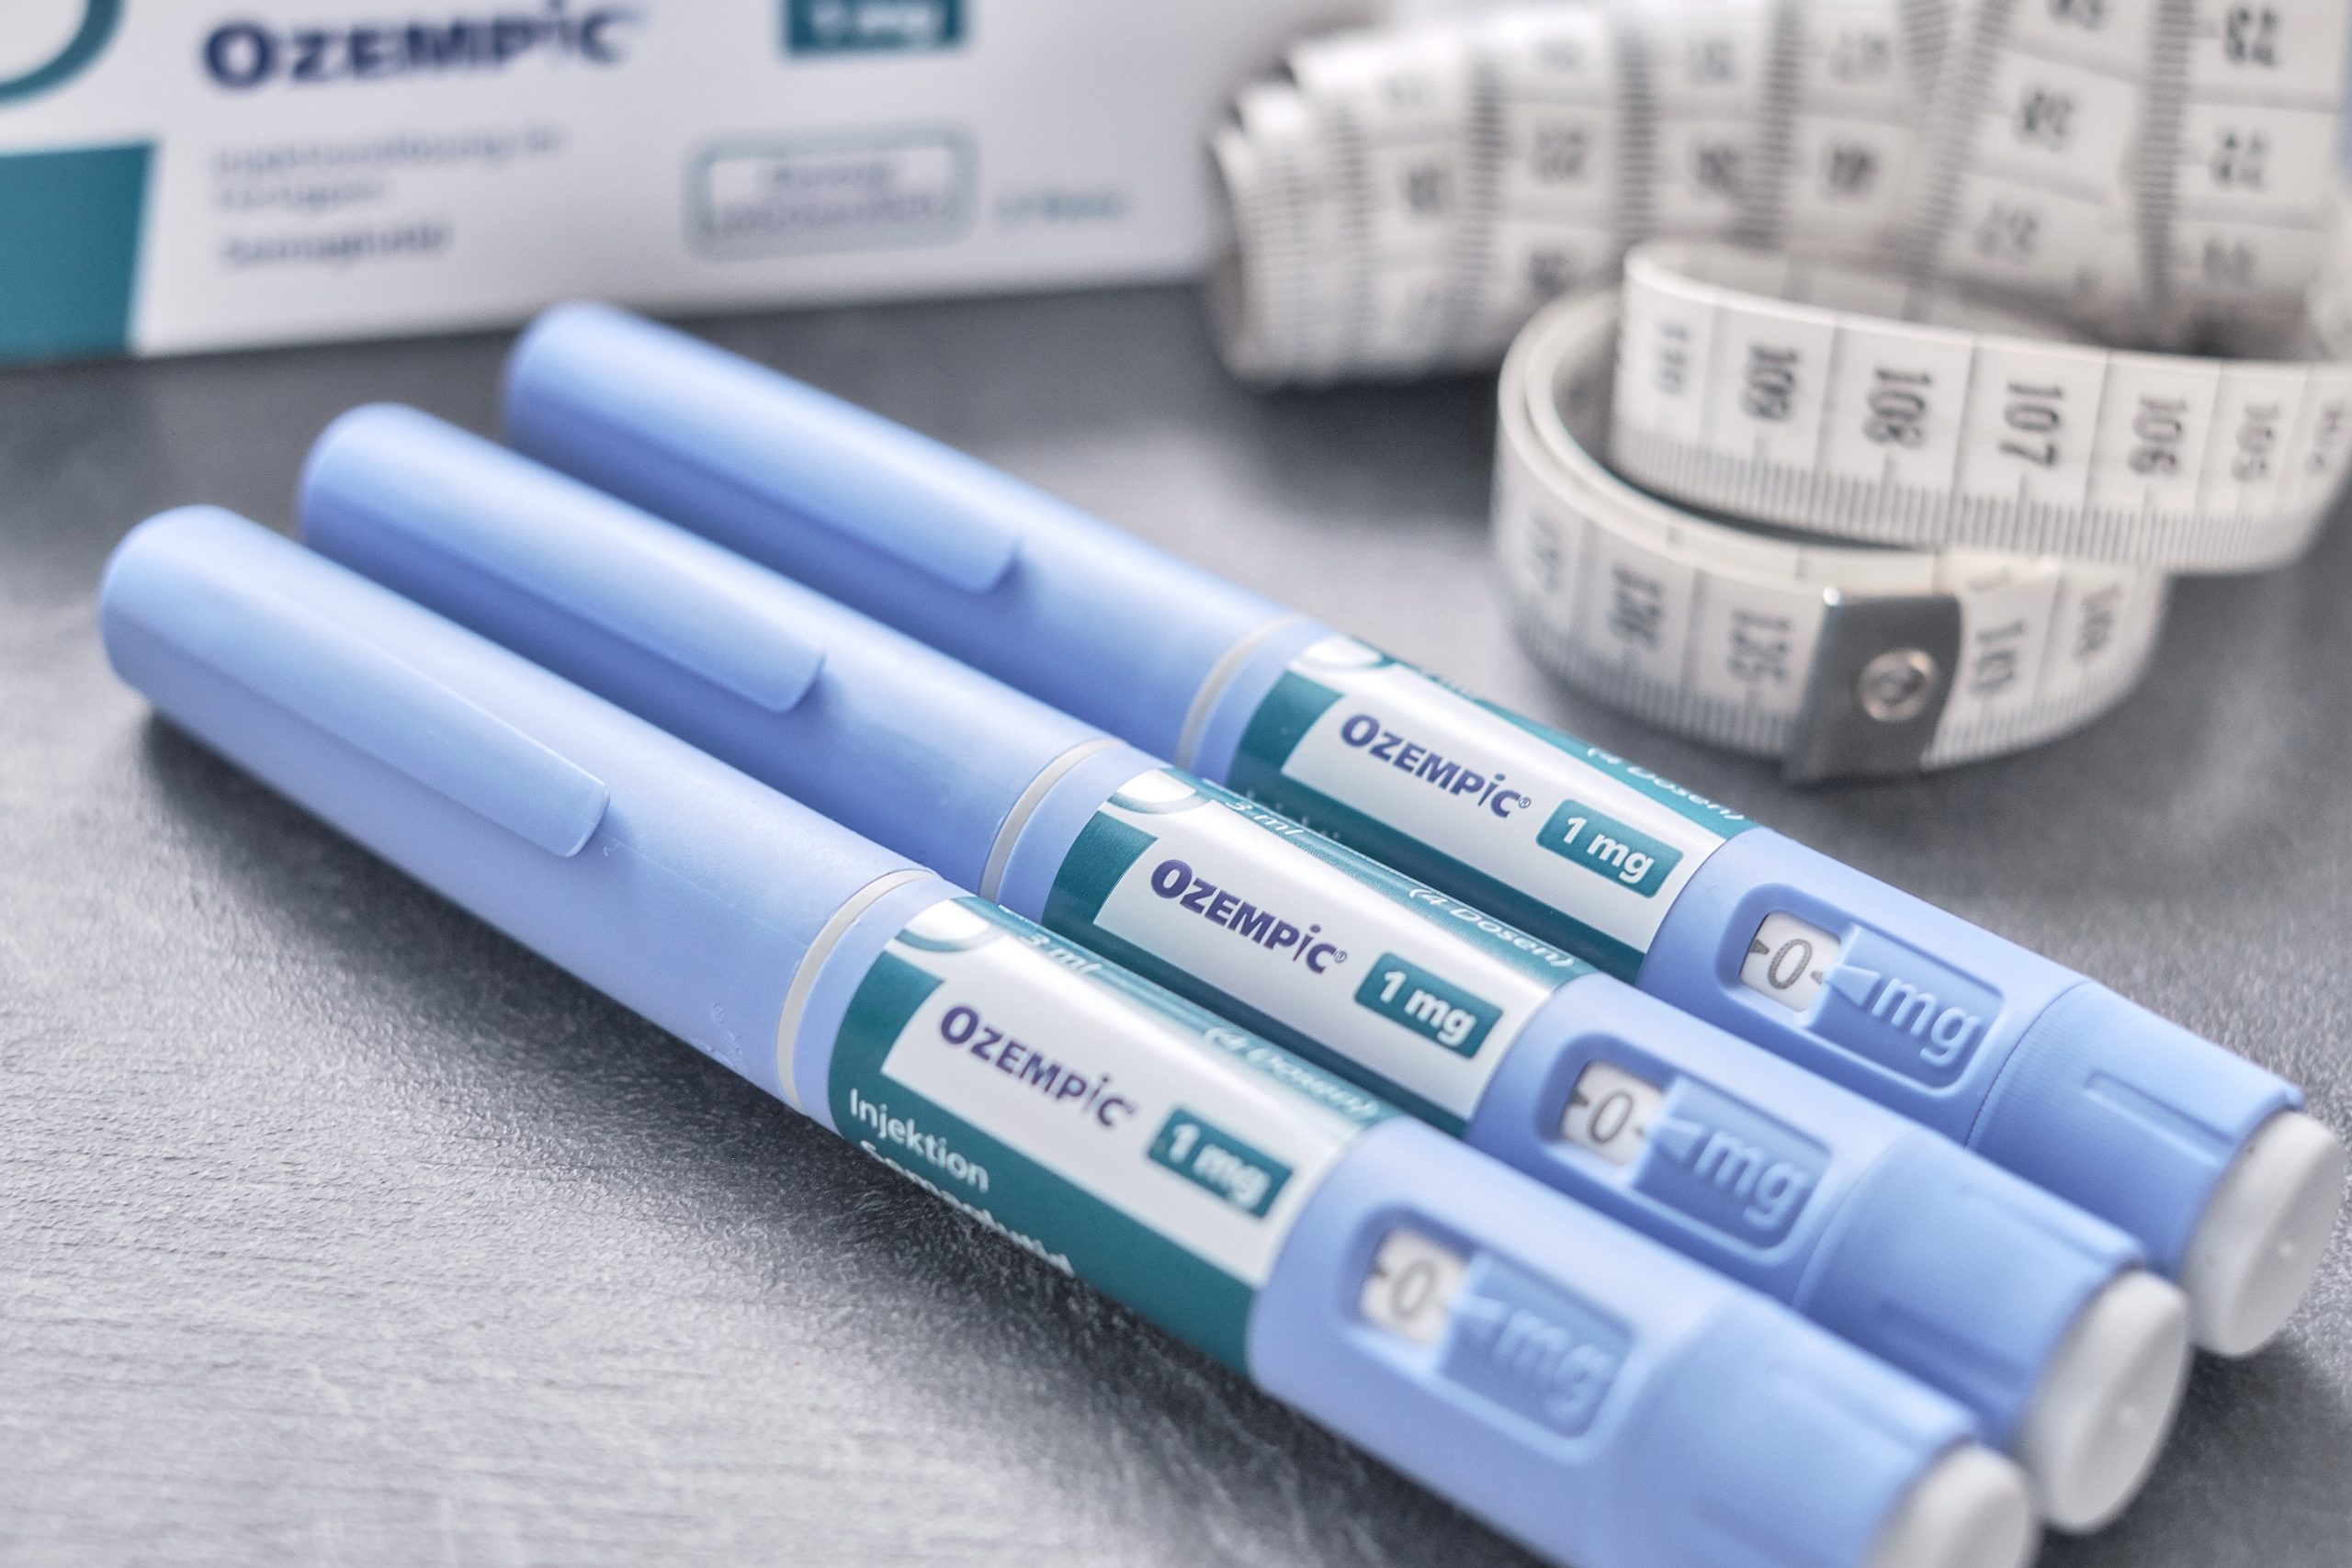 OMS alerta para falsificação do medicamento Ozempic para diabetes